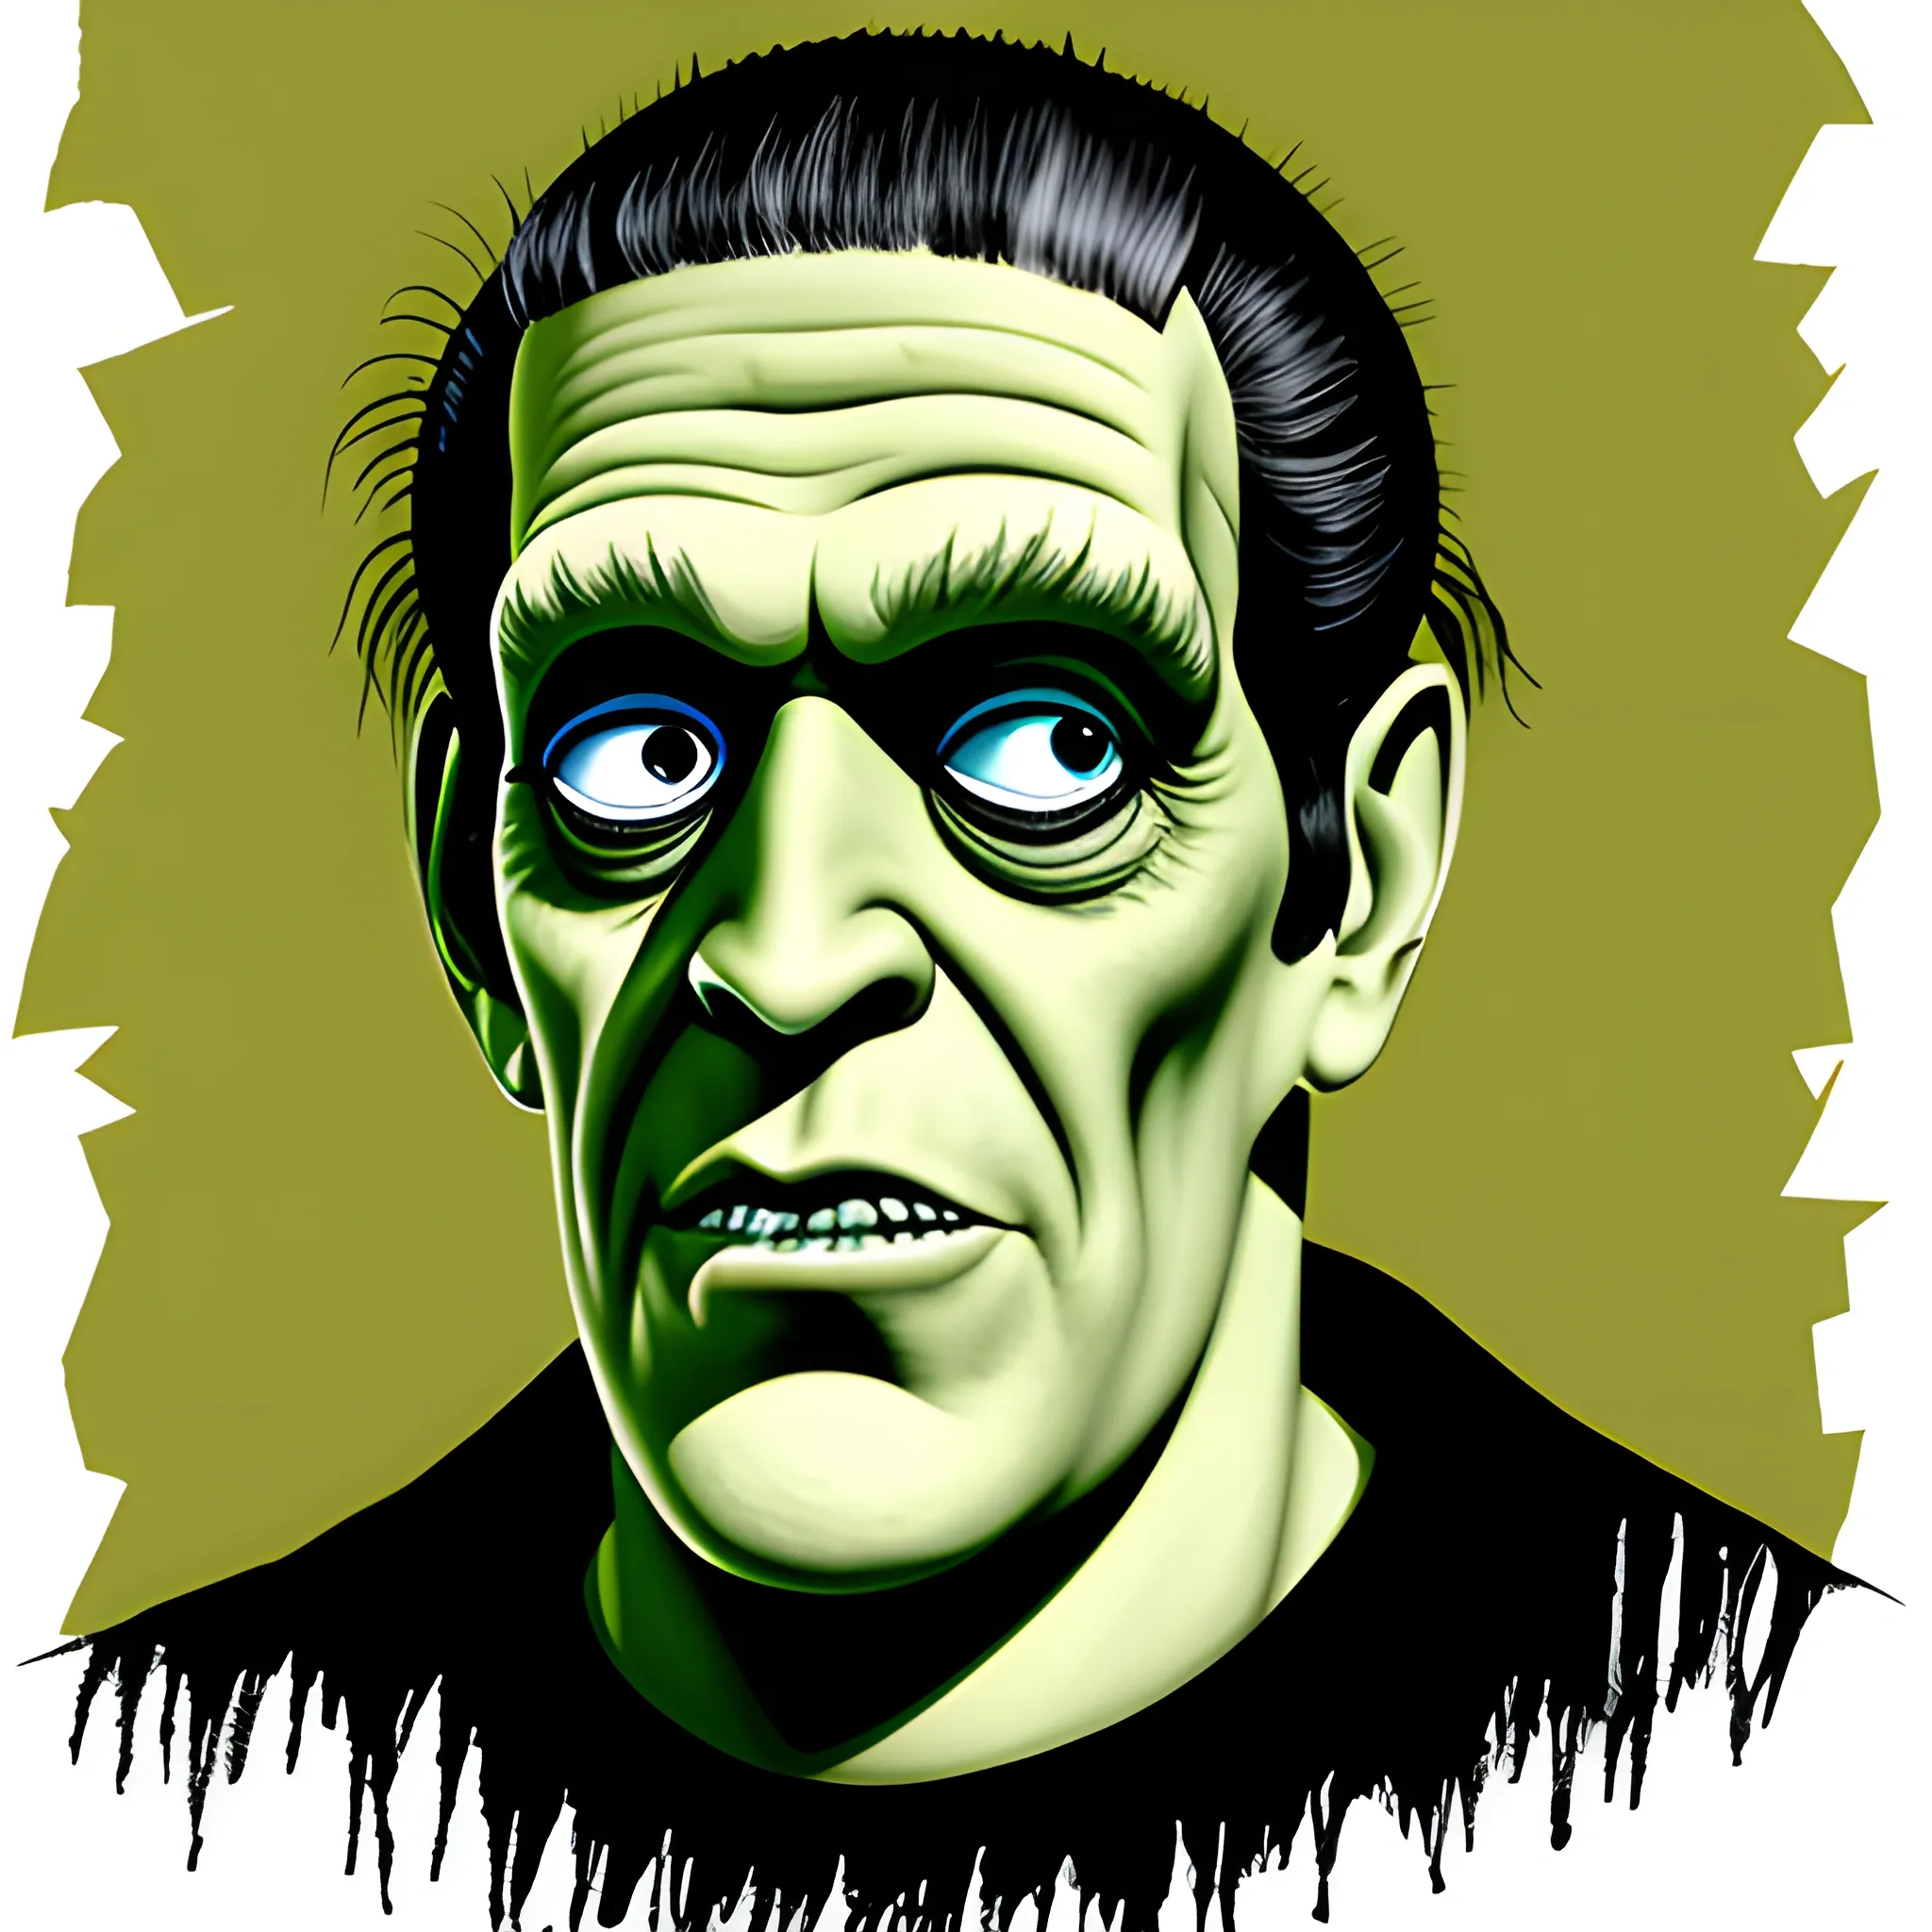 Herman munster Frankenstein illustration 